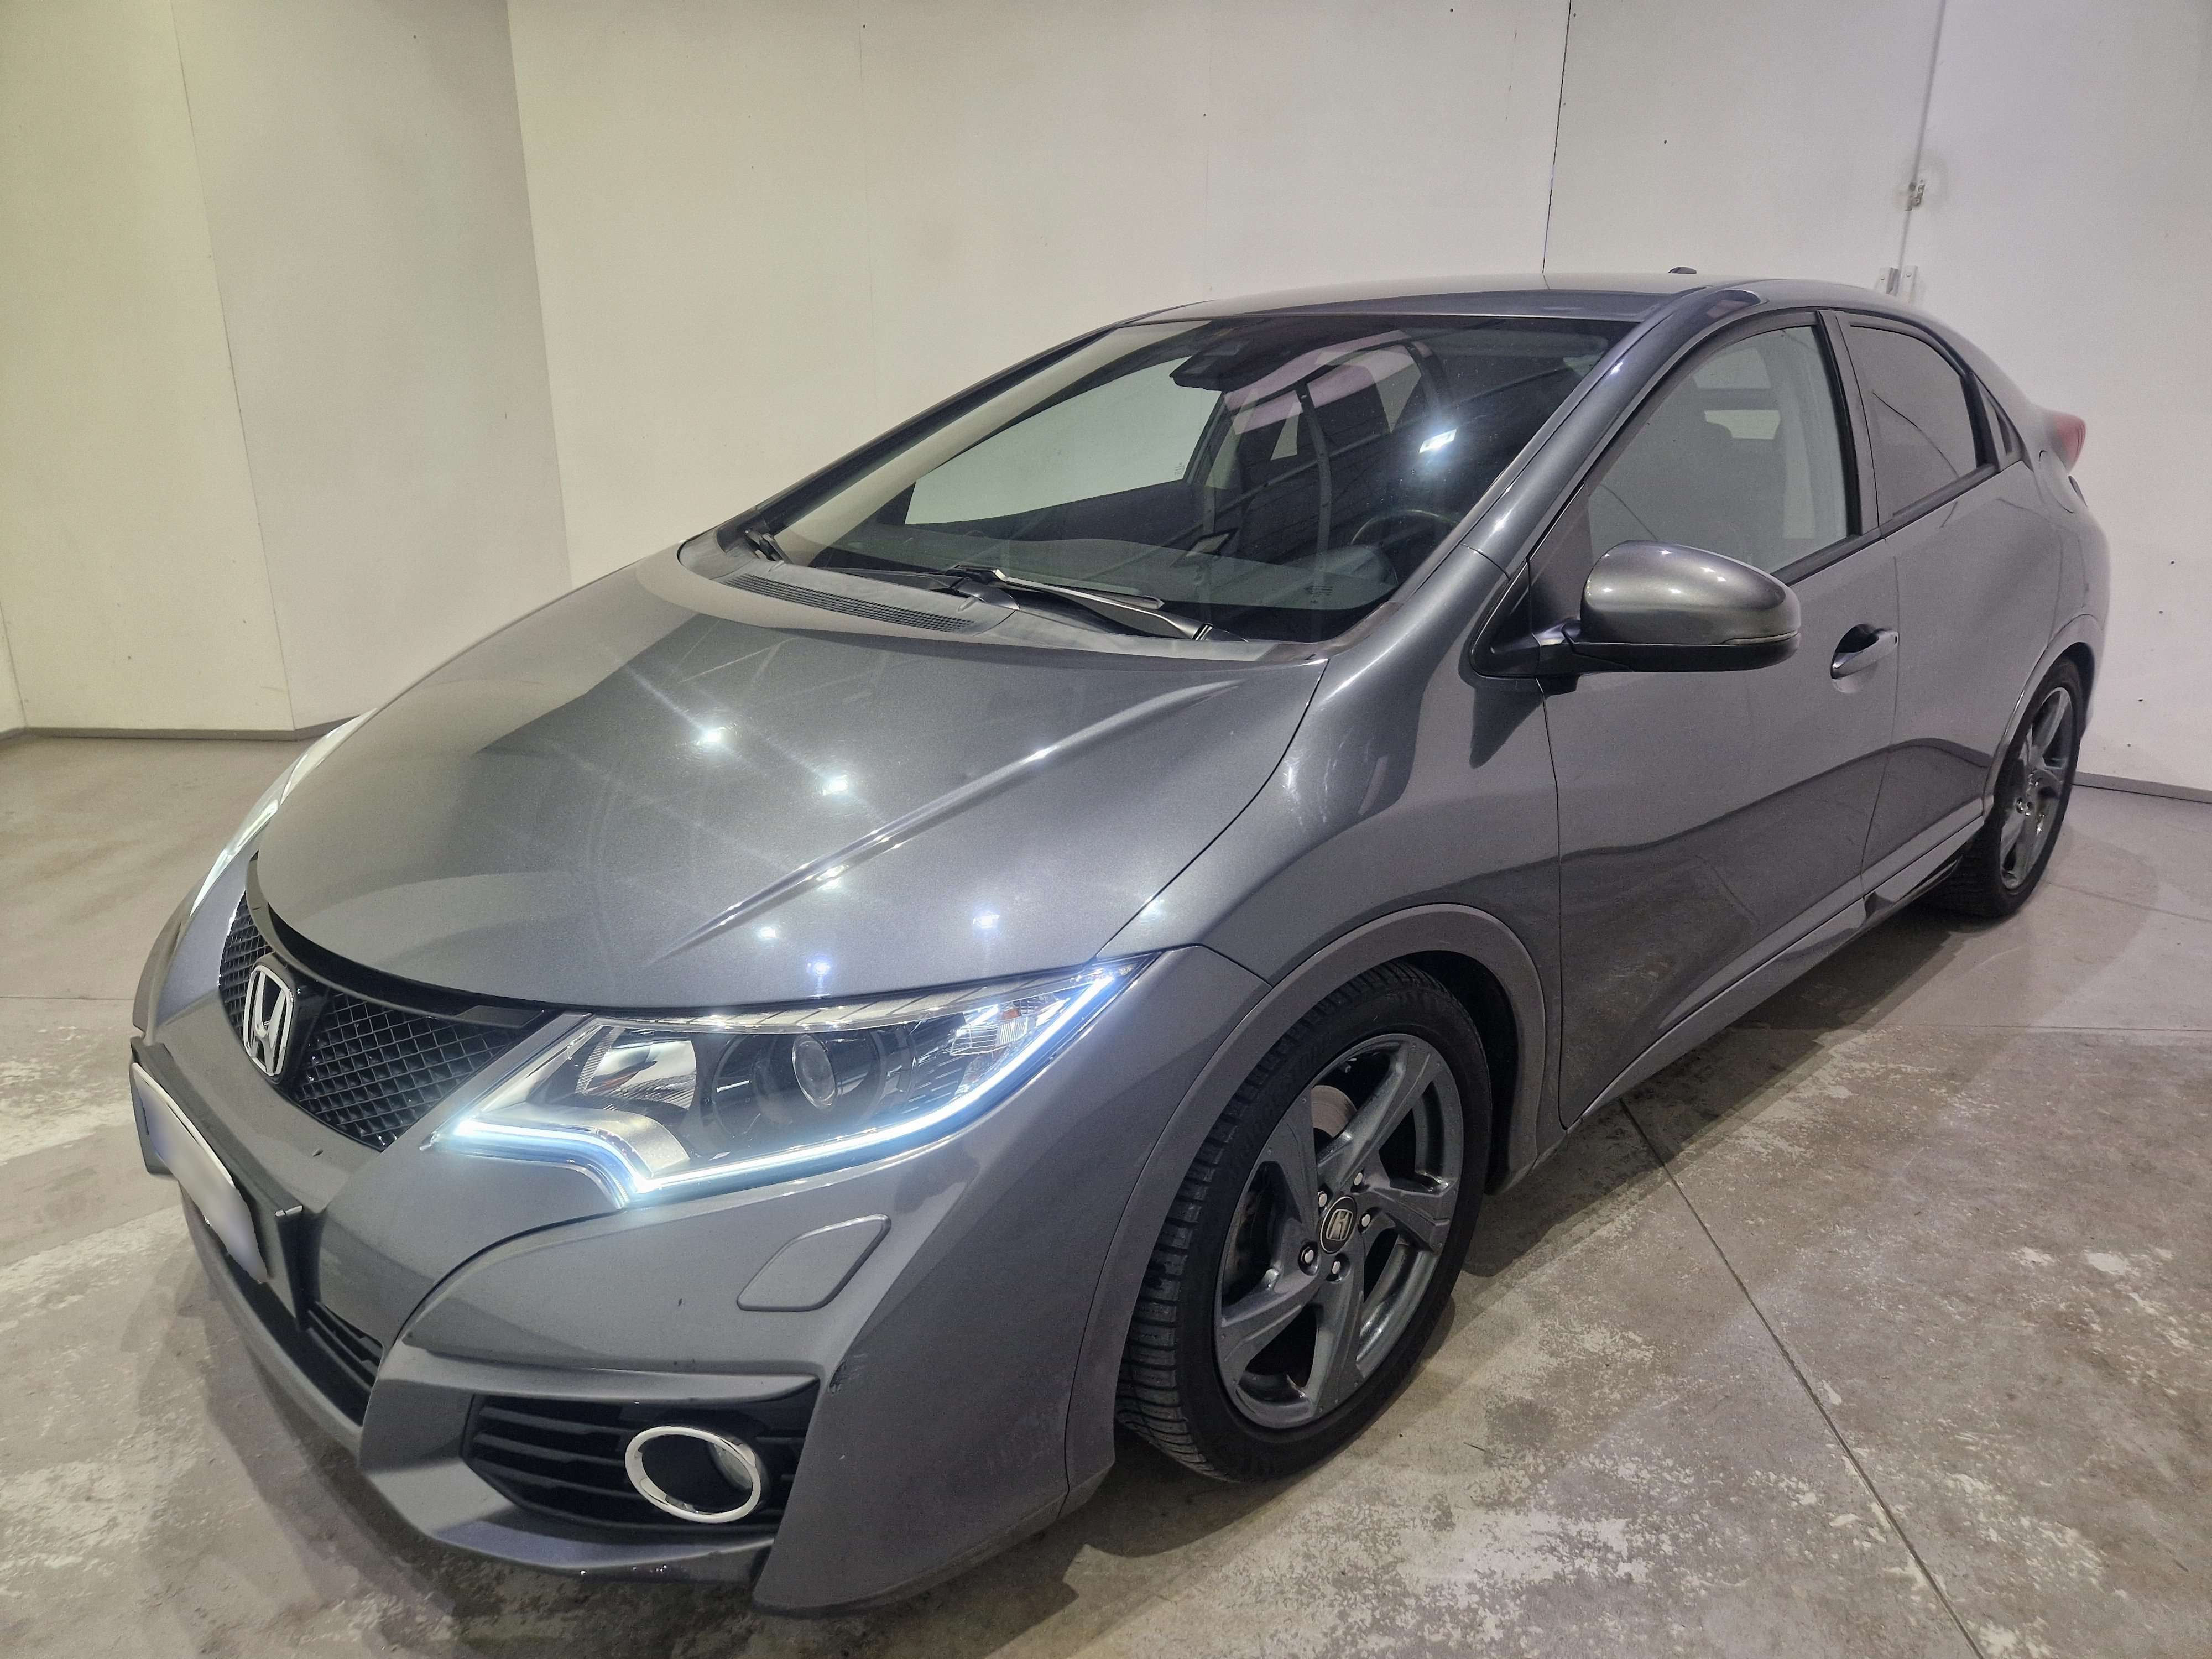 Honda Civic Sedan in Grey used in Cologno Monzese - Mi for € 12,800.-